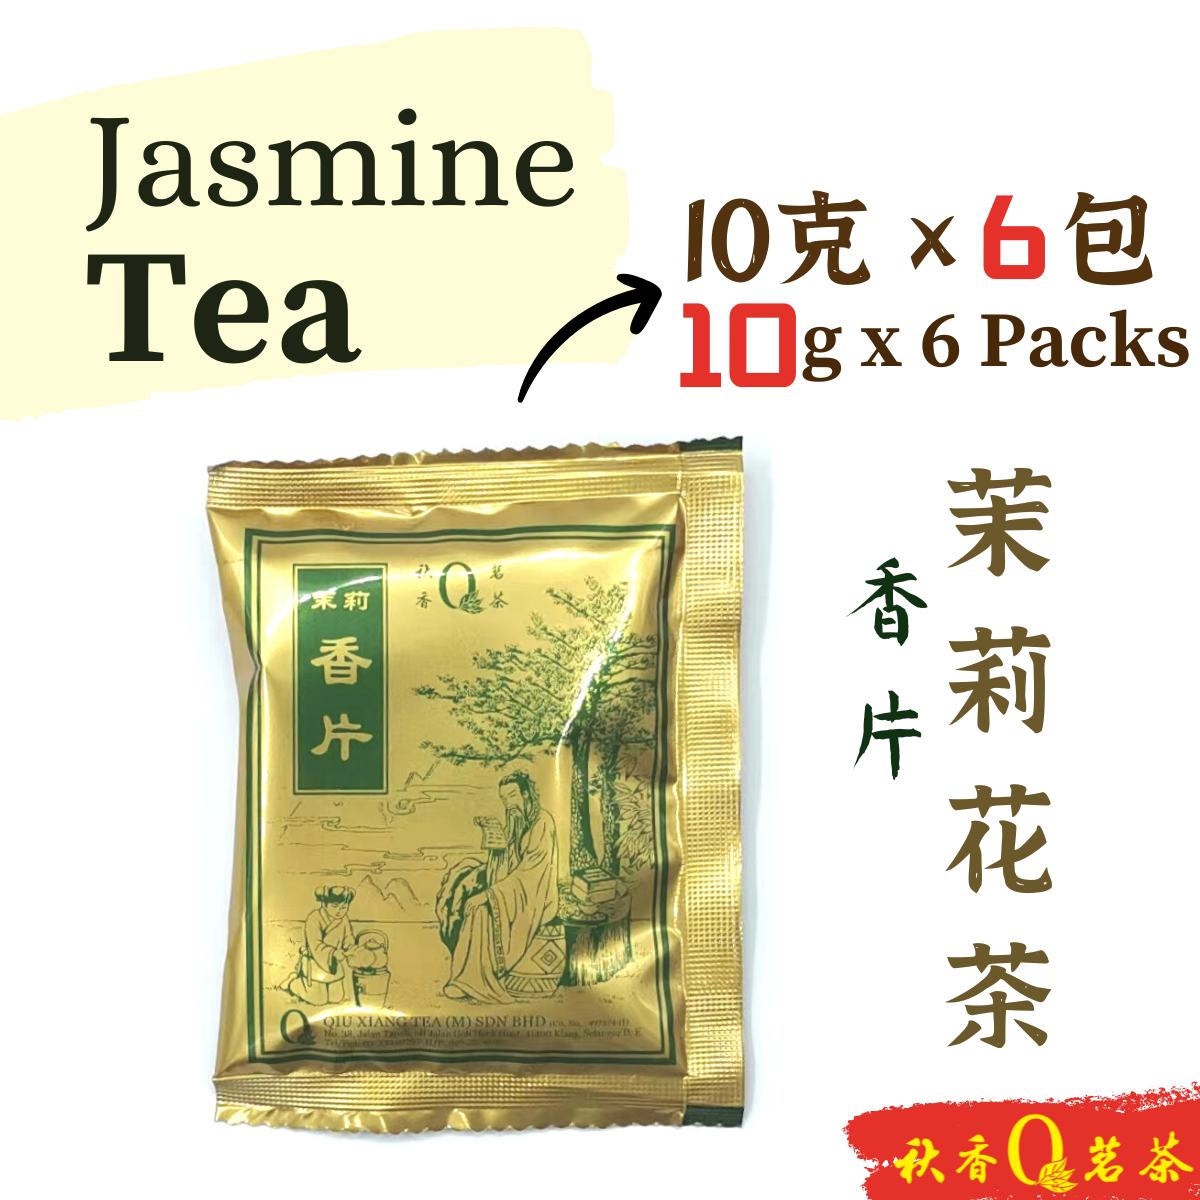 茉莉花茶｜香片 Jasmine Tea【6 Packs x 10g】| 【Scented tea 花茶】